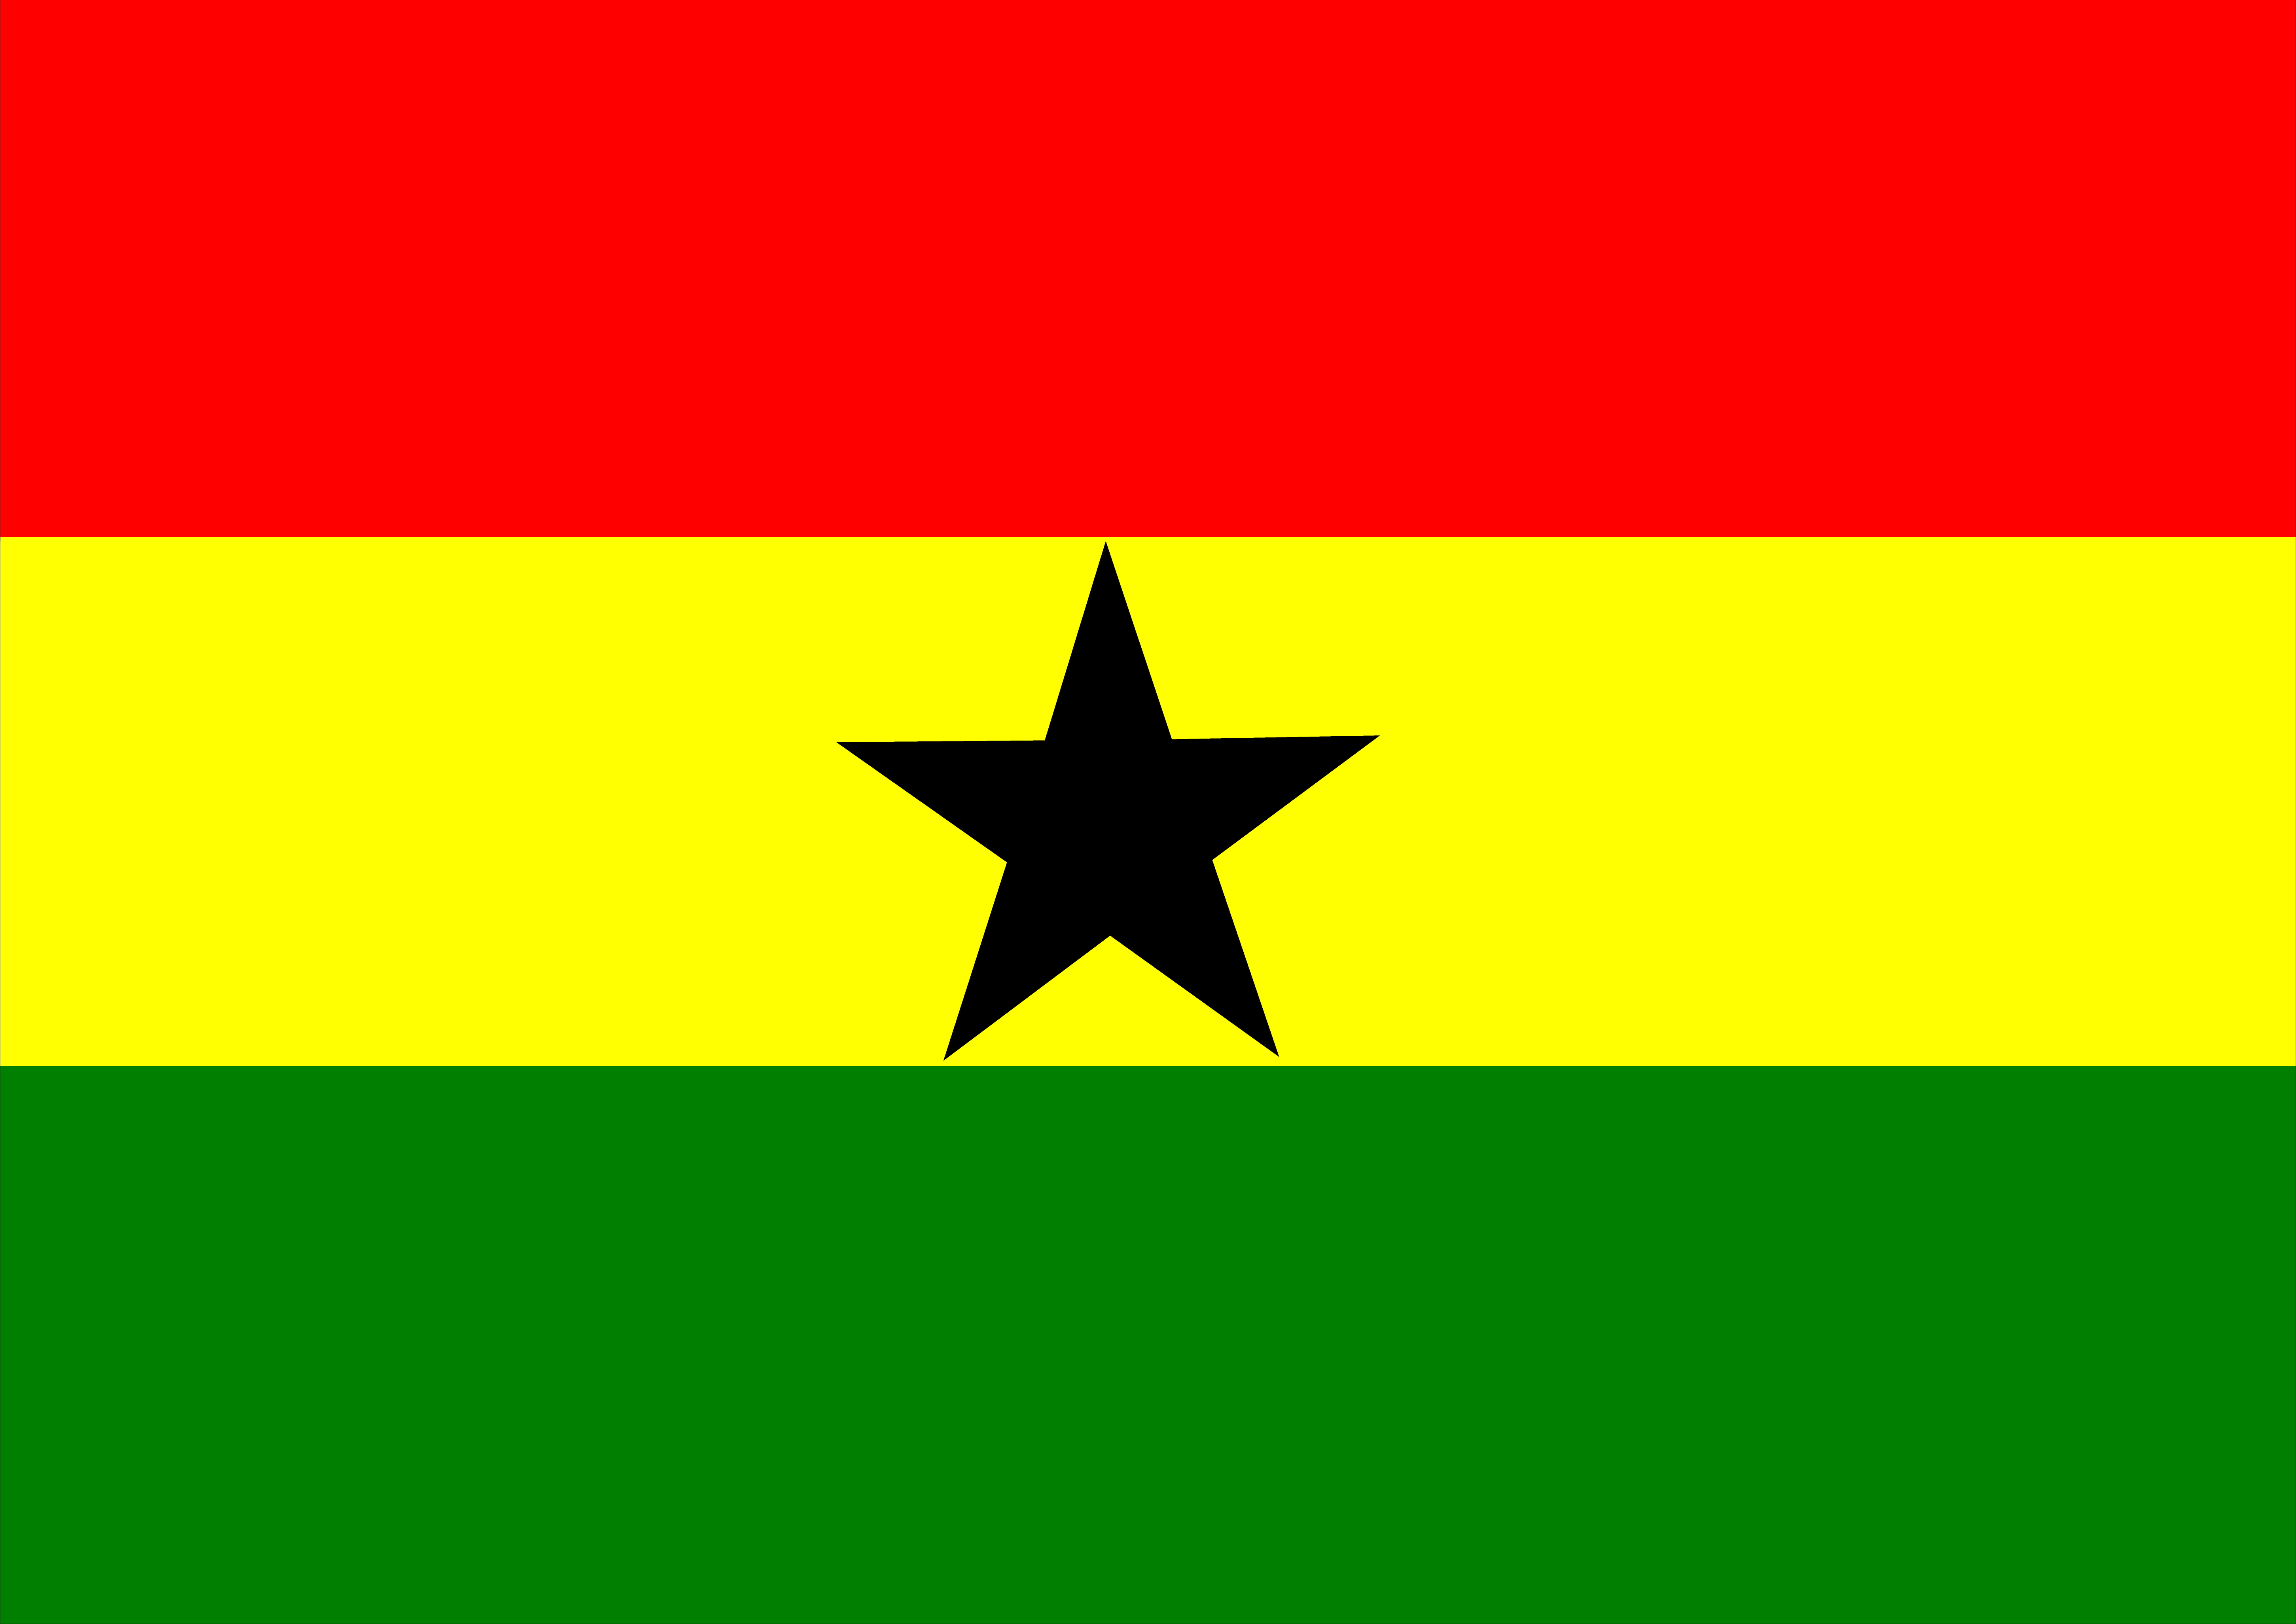 Скачать обои Флаг Ганы на телефон бесплатно